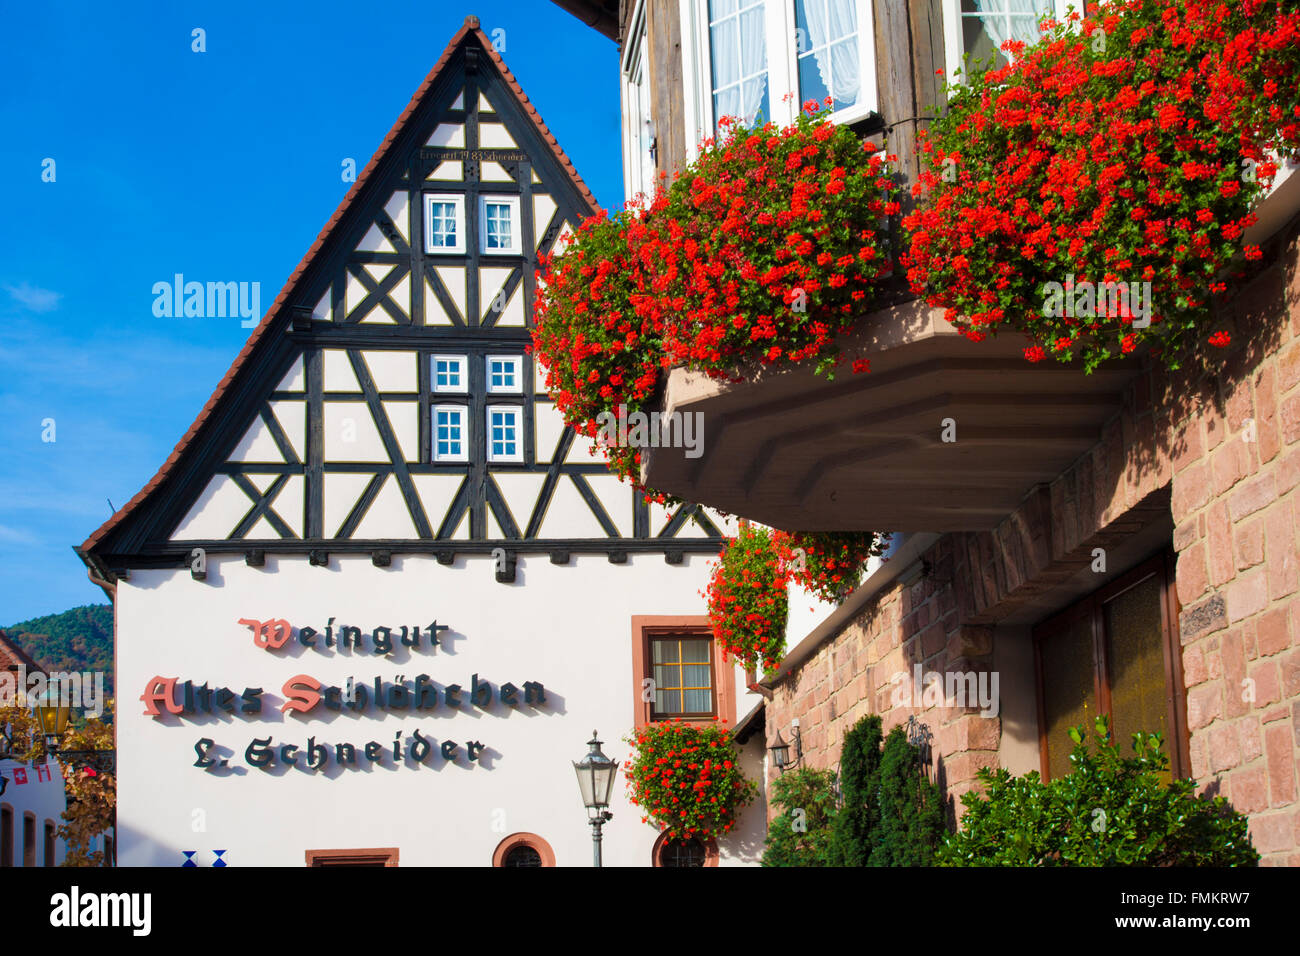 Détail de la dégustation de vins chambre avec balcon de géraniums rouge,SANKT MARTIN, Rhénanie-Palatinat, Allemagne. Banque D'Images